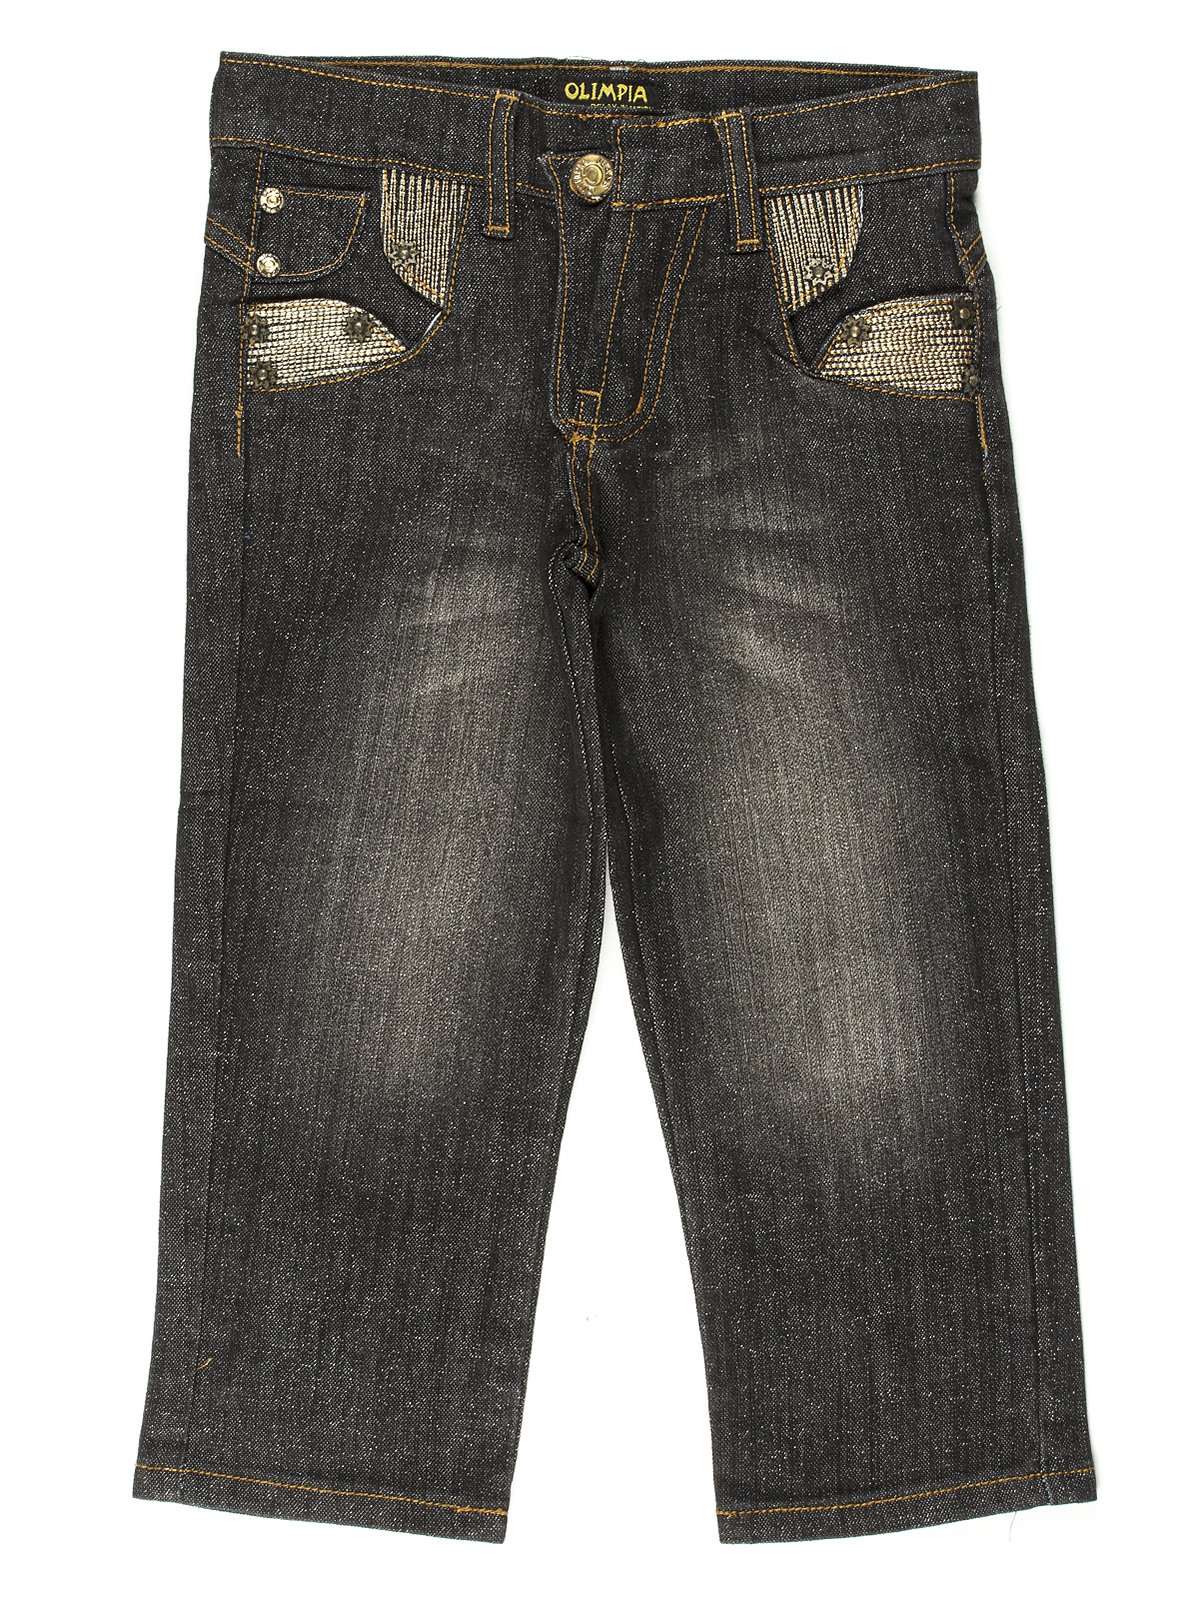 Капри черные джинсовые | 649111